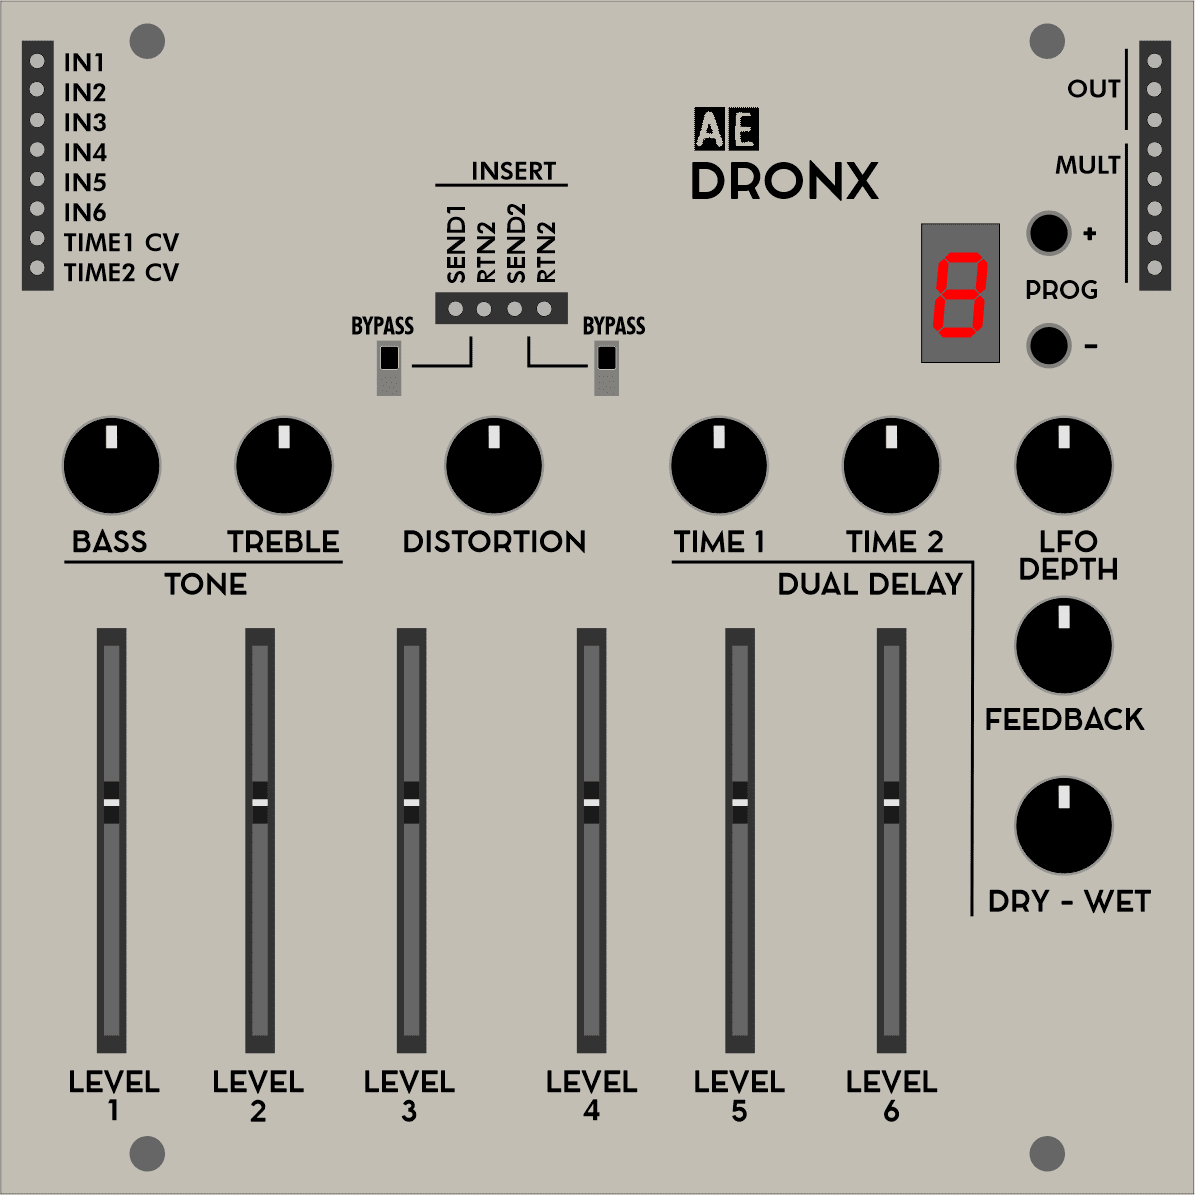 DRONX-a-special-mixer-for-AE-Modular